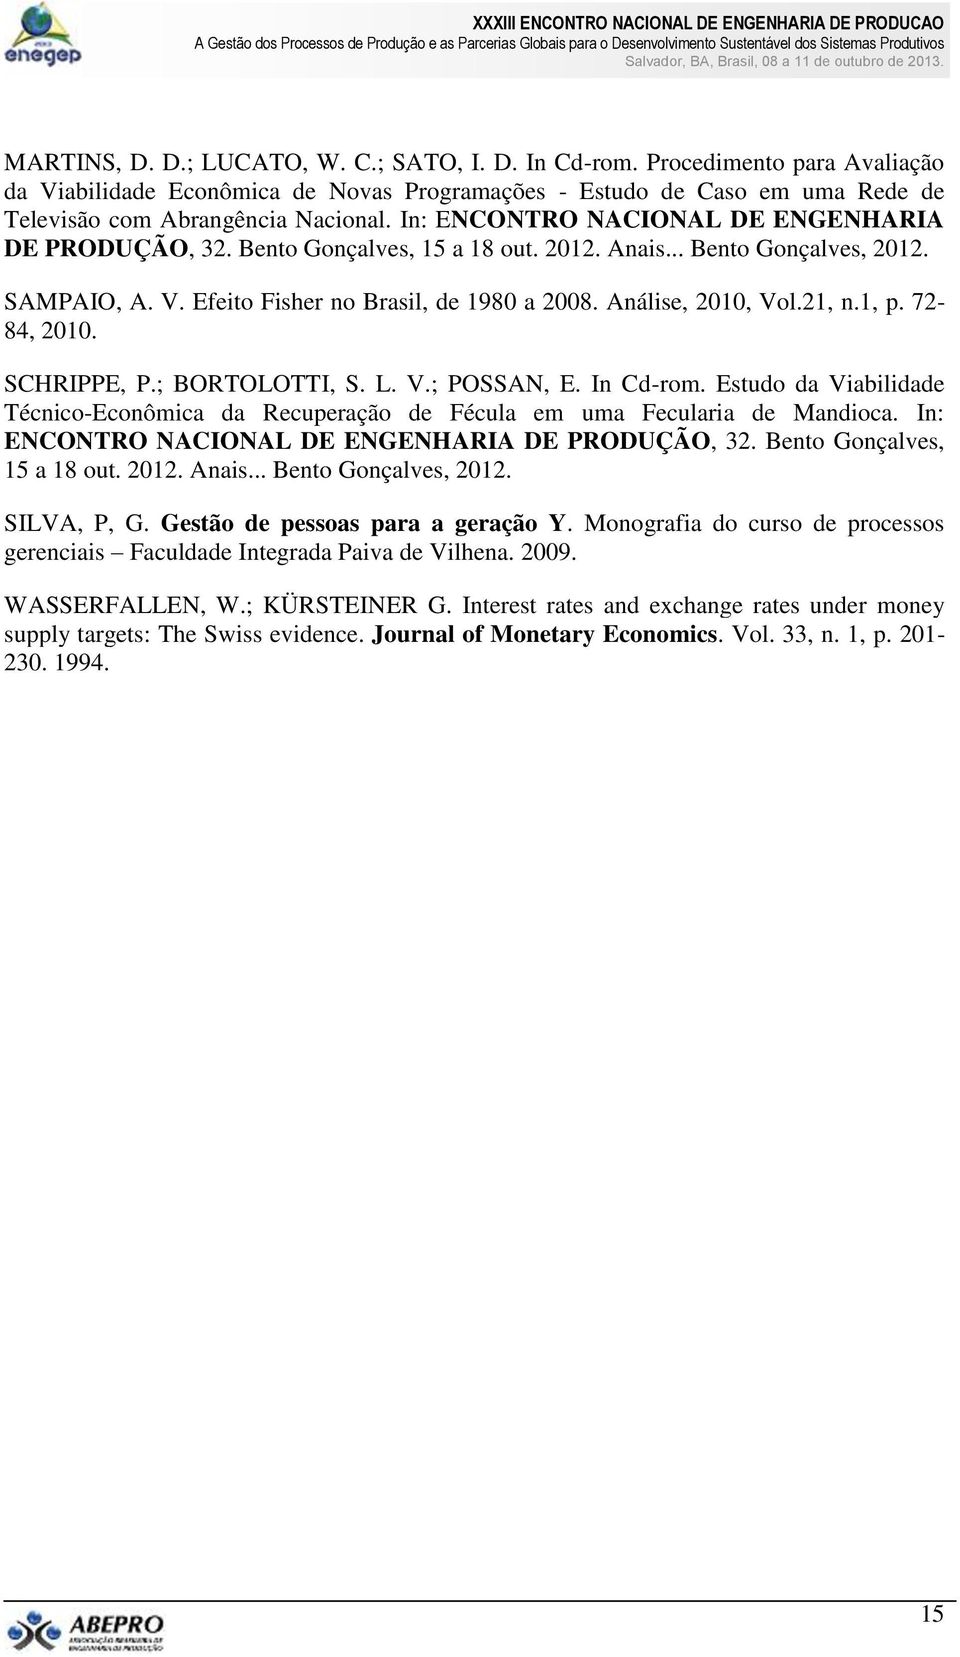 21, n.1, p. 72-84, 2010. SCHRIPPE, P.; BORTOLOTTI, S. L. V.; POSSAN, E. In Cd-rom. Estudo da Viabilidade Técnico-Econômica da Recuperação de Fécula em uma Fecularia de Mandioca.